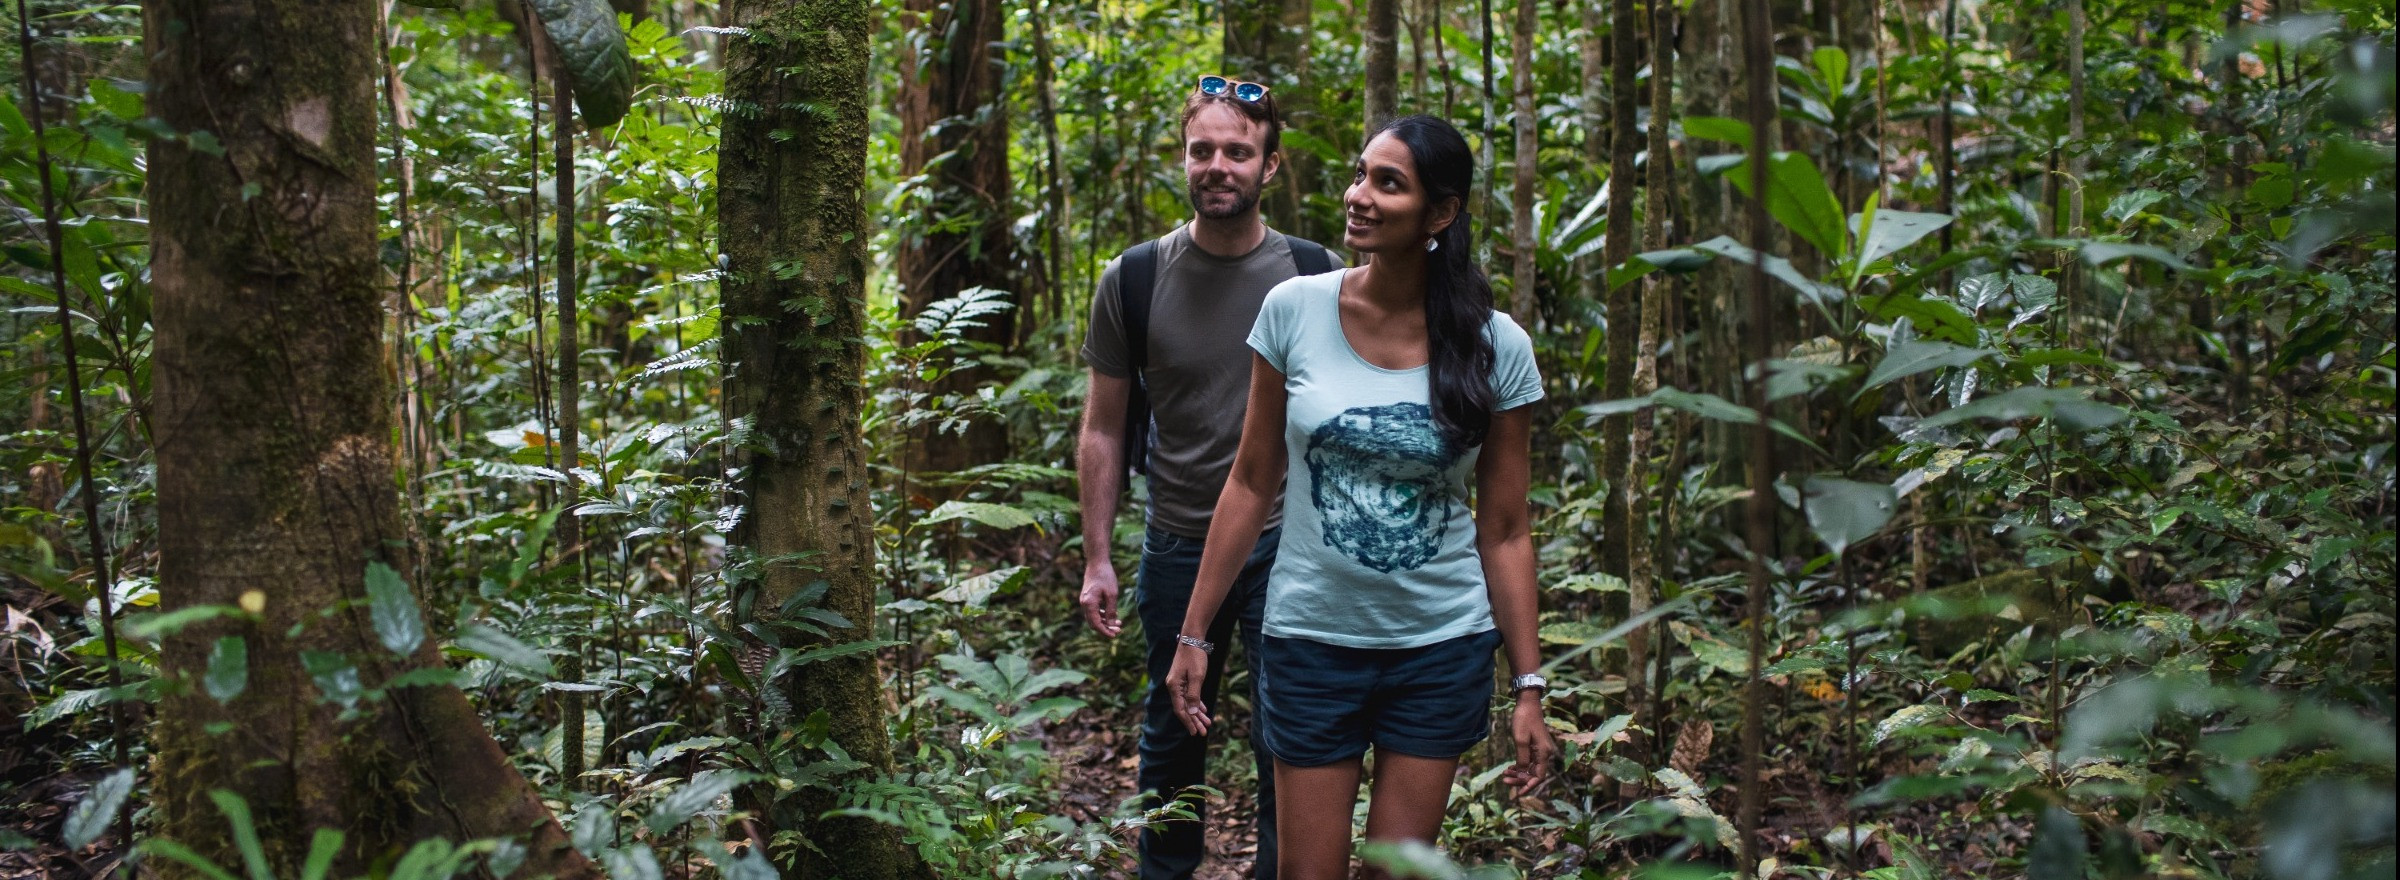 couple walking in Rainforest